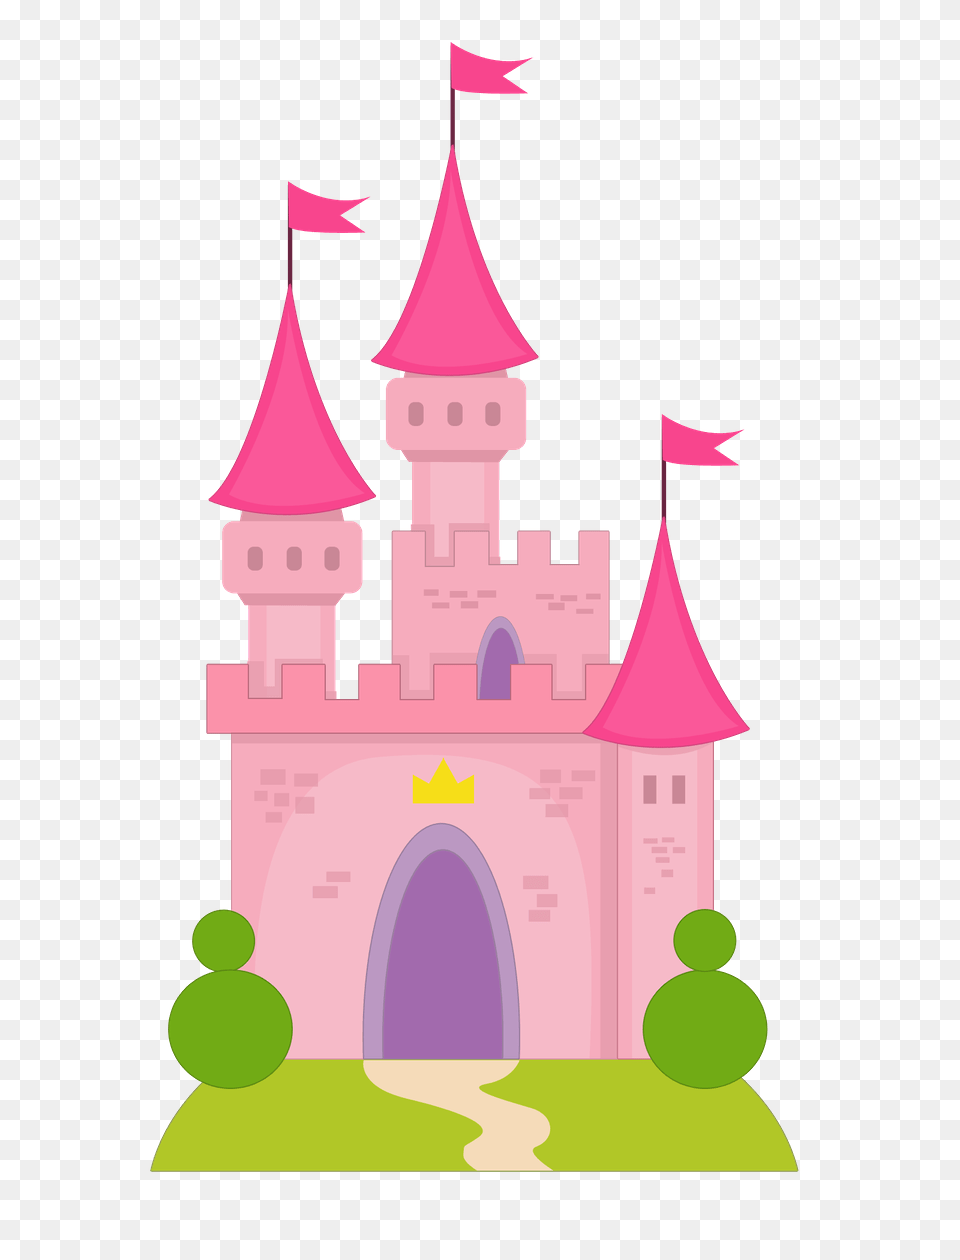 Princesas E, Architecture, Building, Castle, Fortress Png Image